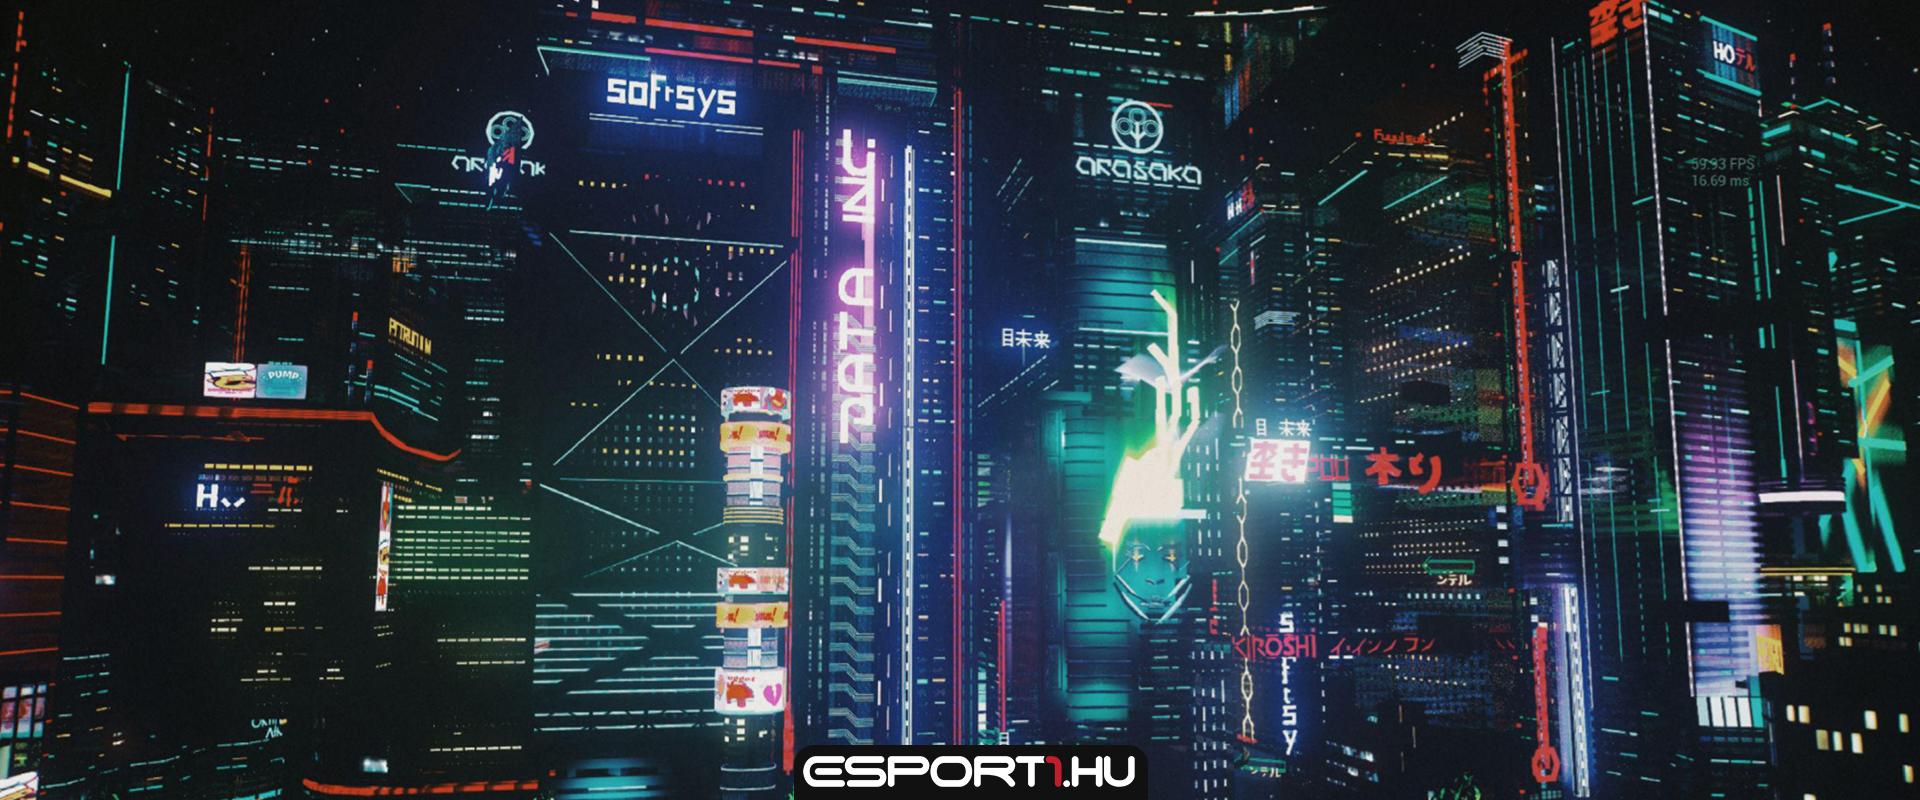 Cyberpunk 2077 egy kicsit másképp: a Fortnite Creative-ban építette meg egy rajongó Night City-t